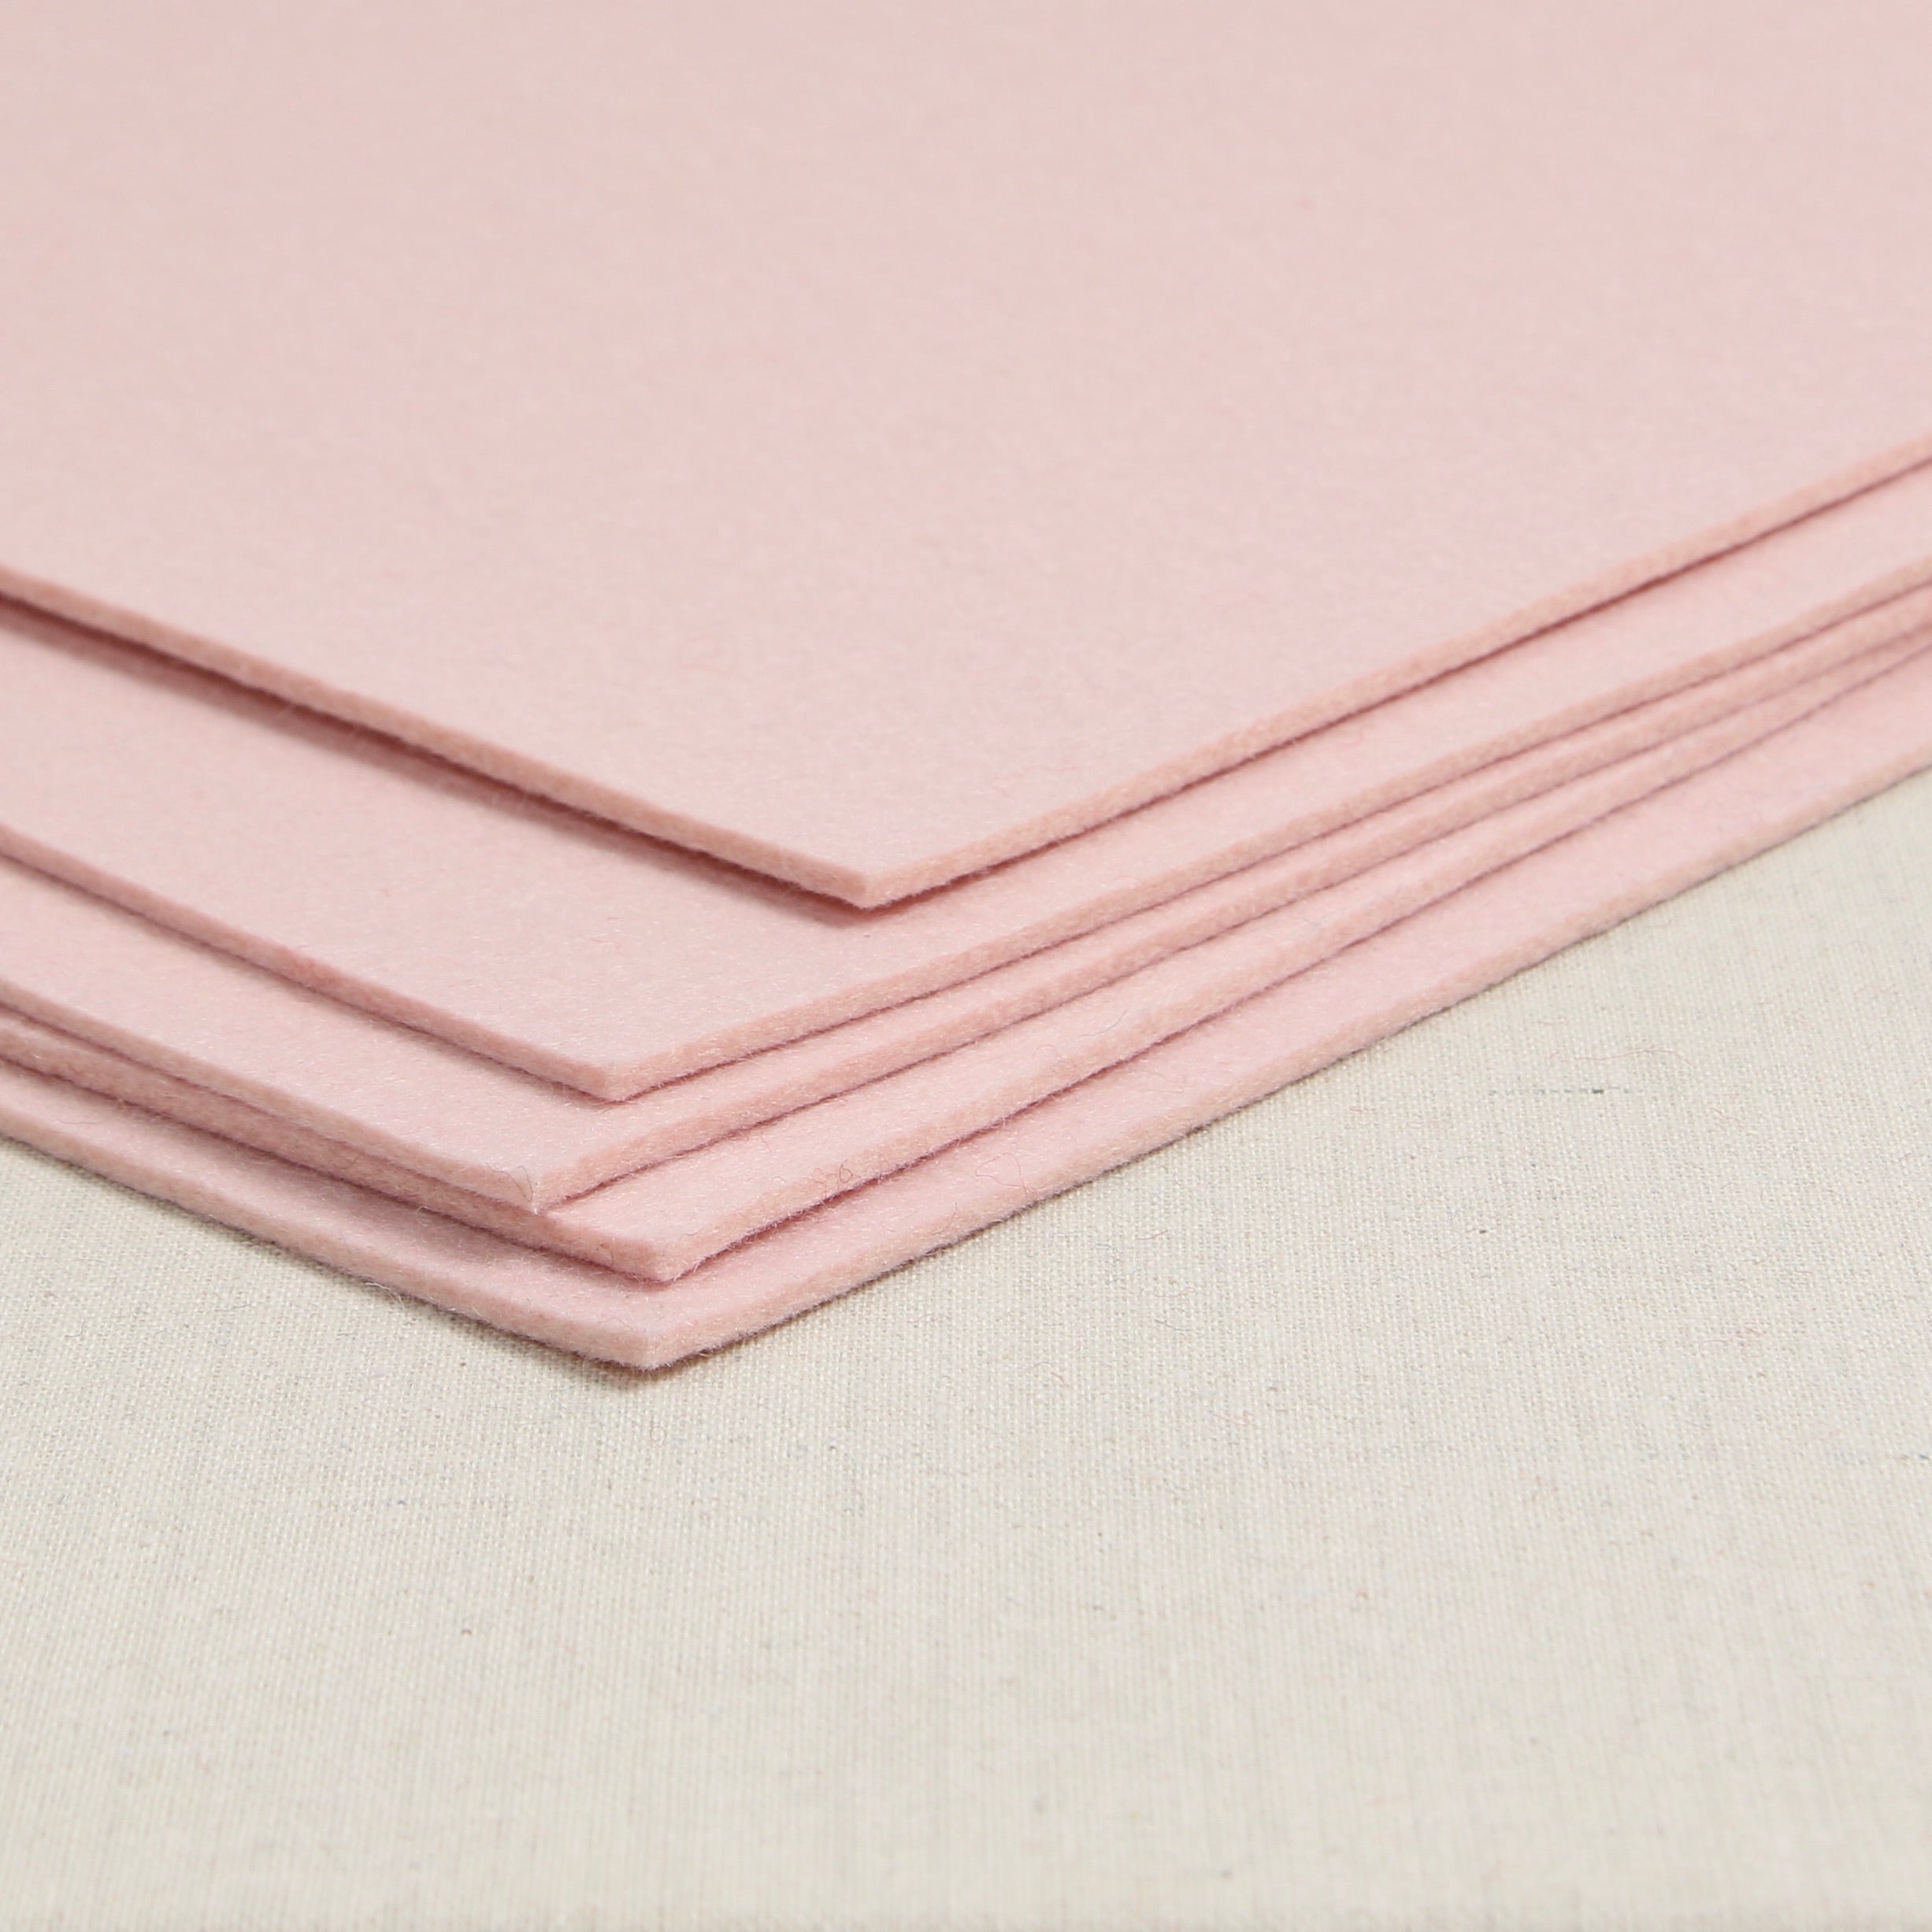 High Quality Craft Felt Sheet 9 x 12: 25 pcs, Light Pink 